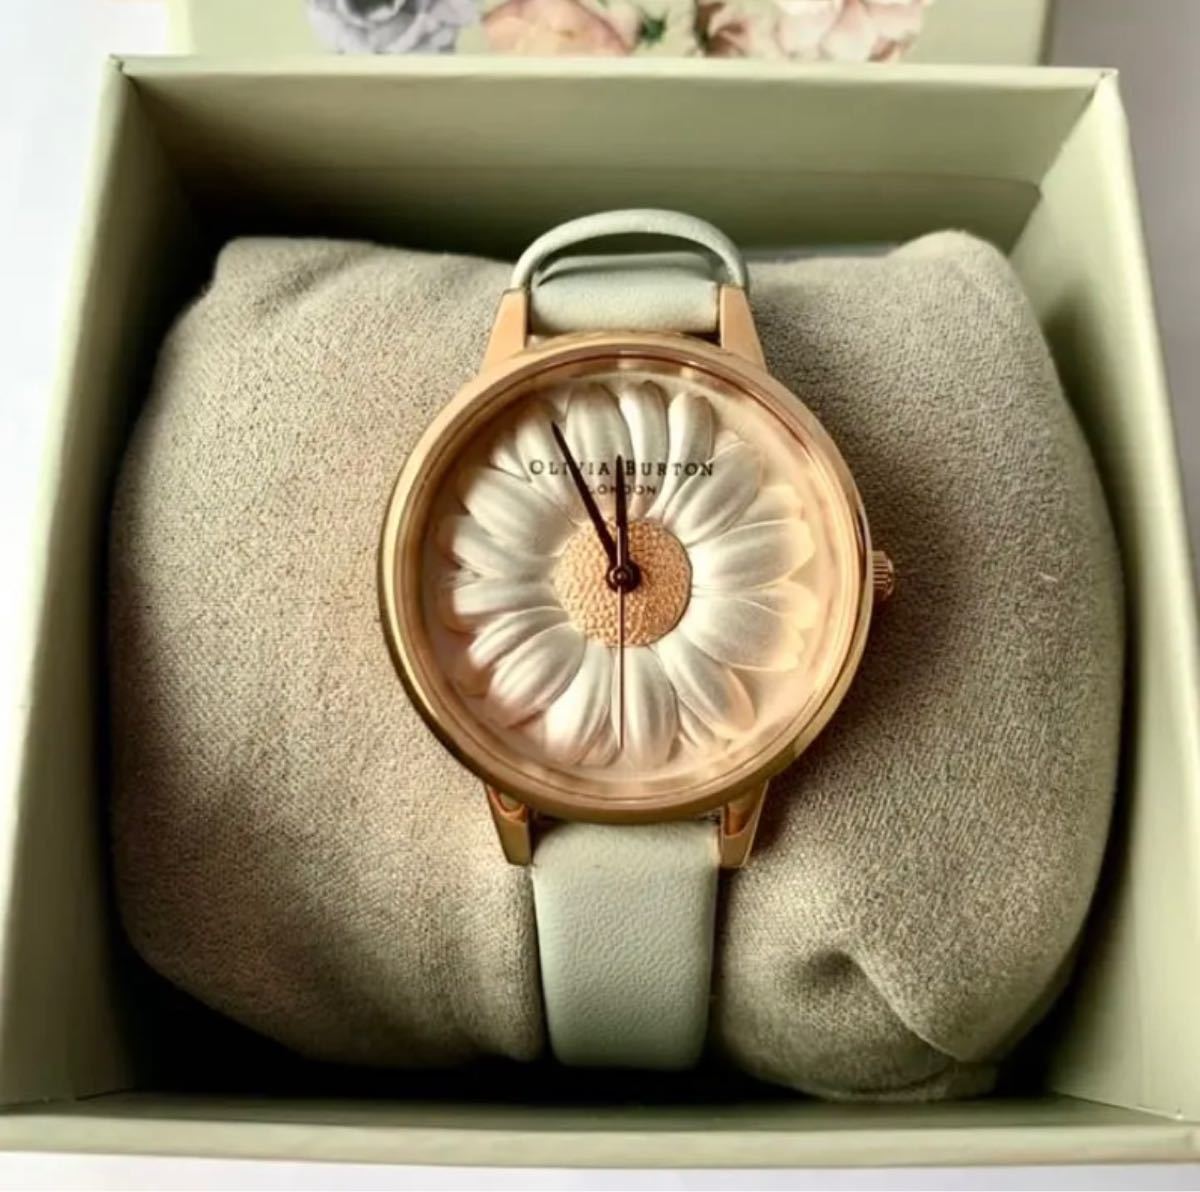 OLIVIA BURTON オリビア バートン 腕時計 フラワーショー 3Dデイジー 箱付き ローズゴールド OB16VE01